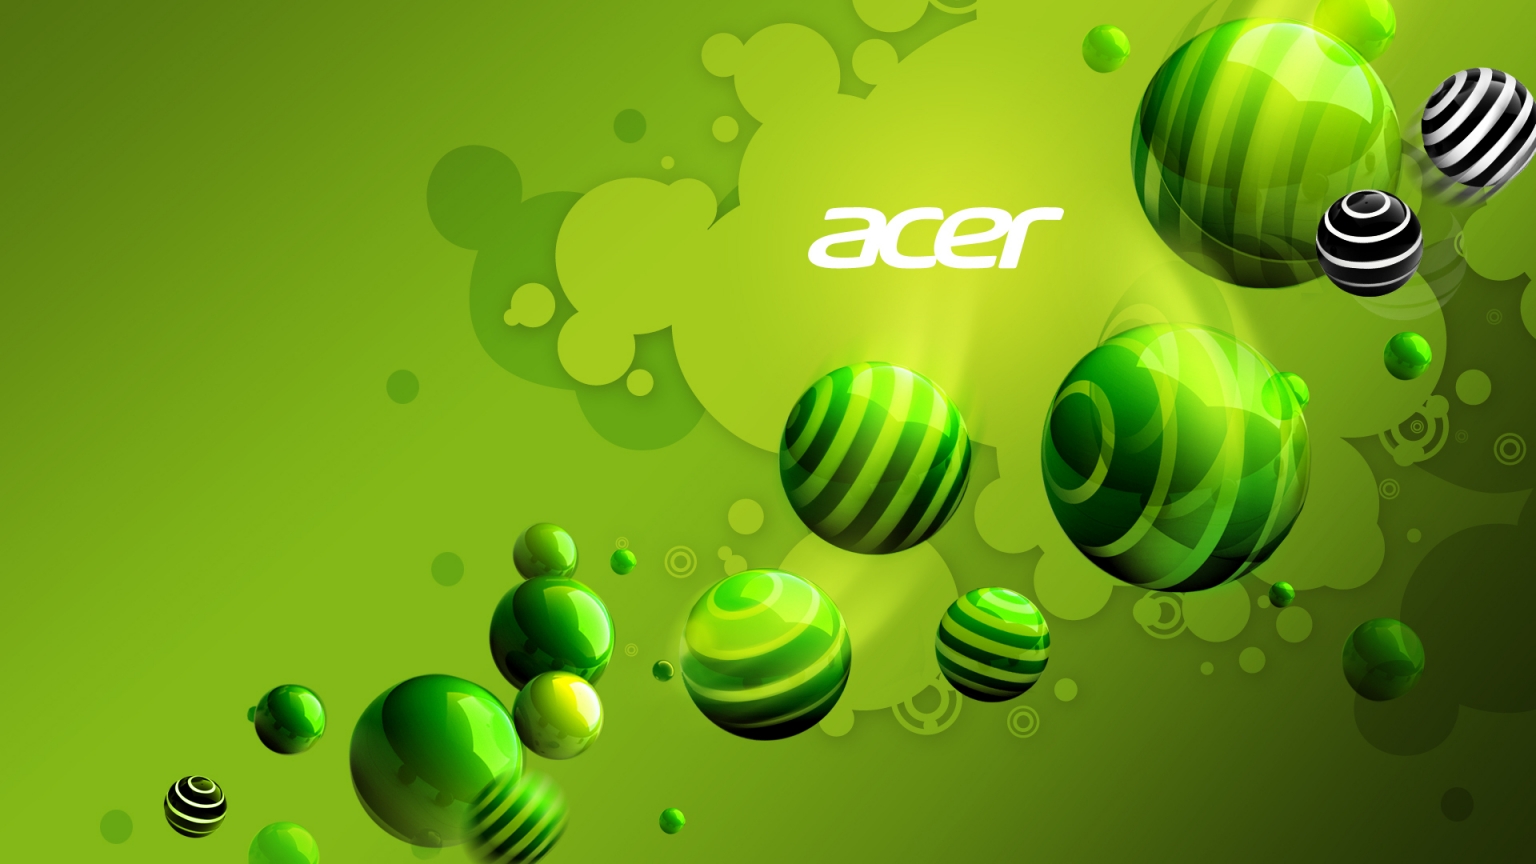 Acer Green World for 1536 x 864 HDTV resolution